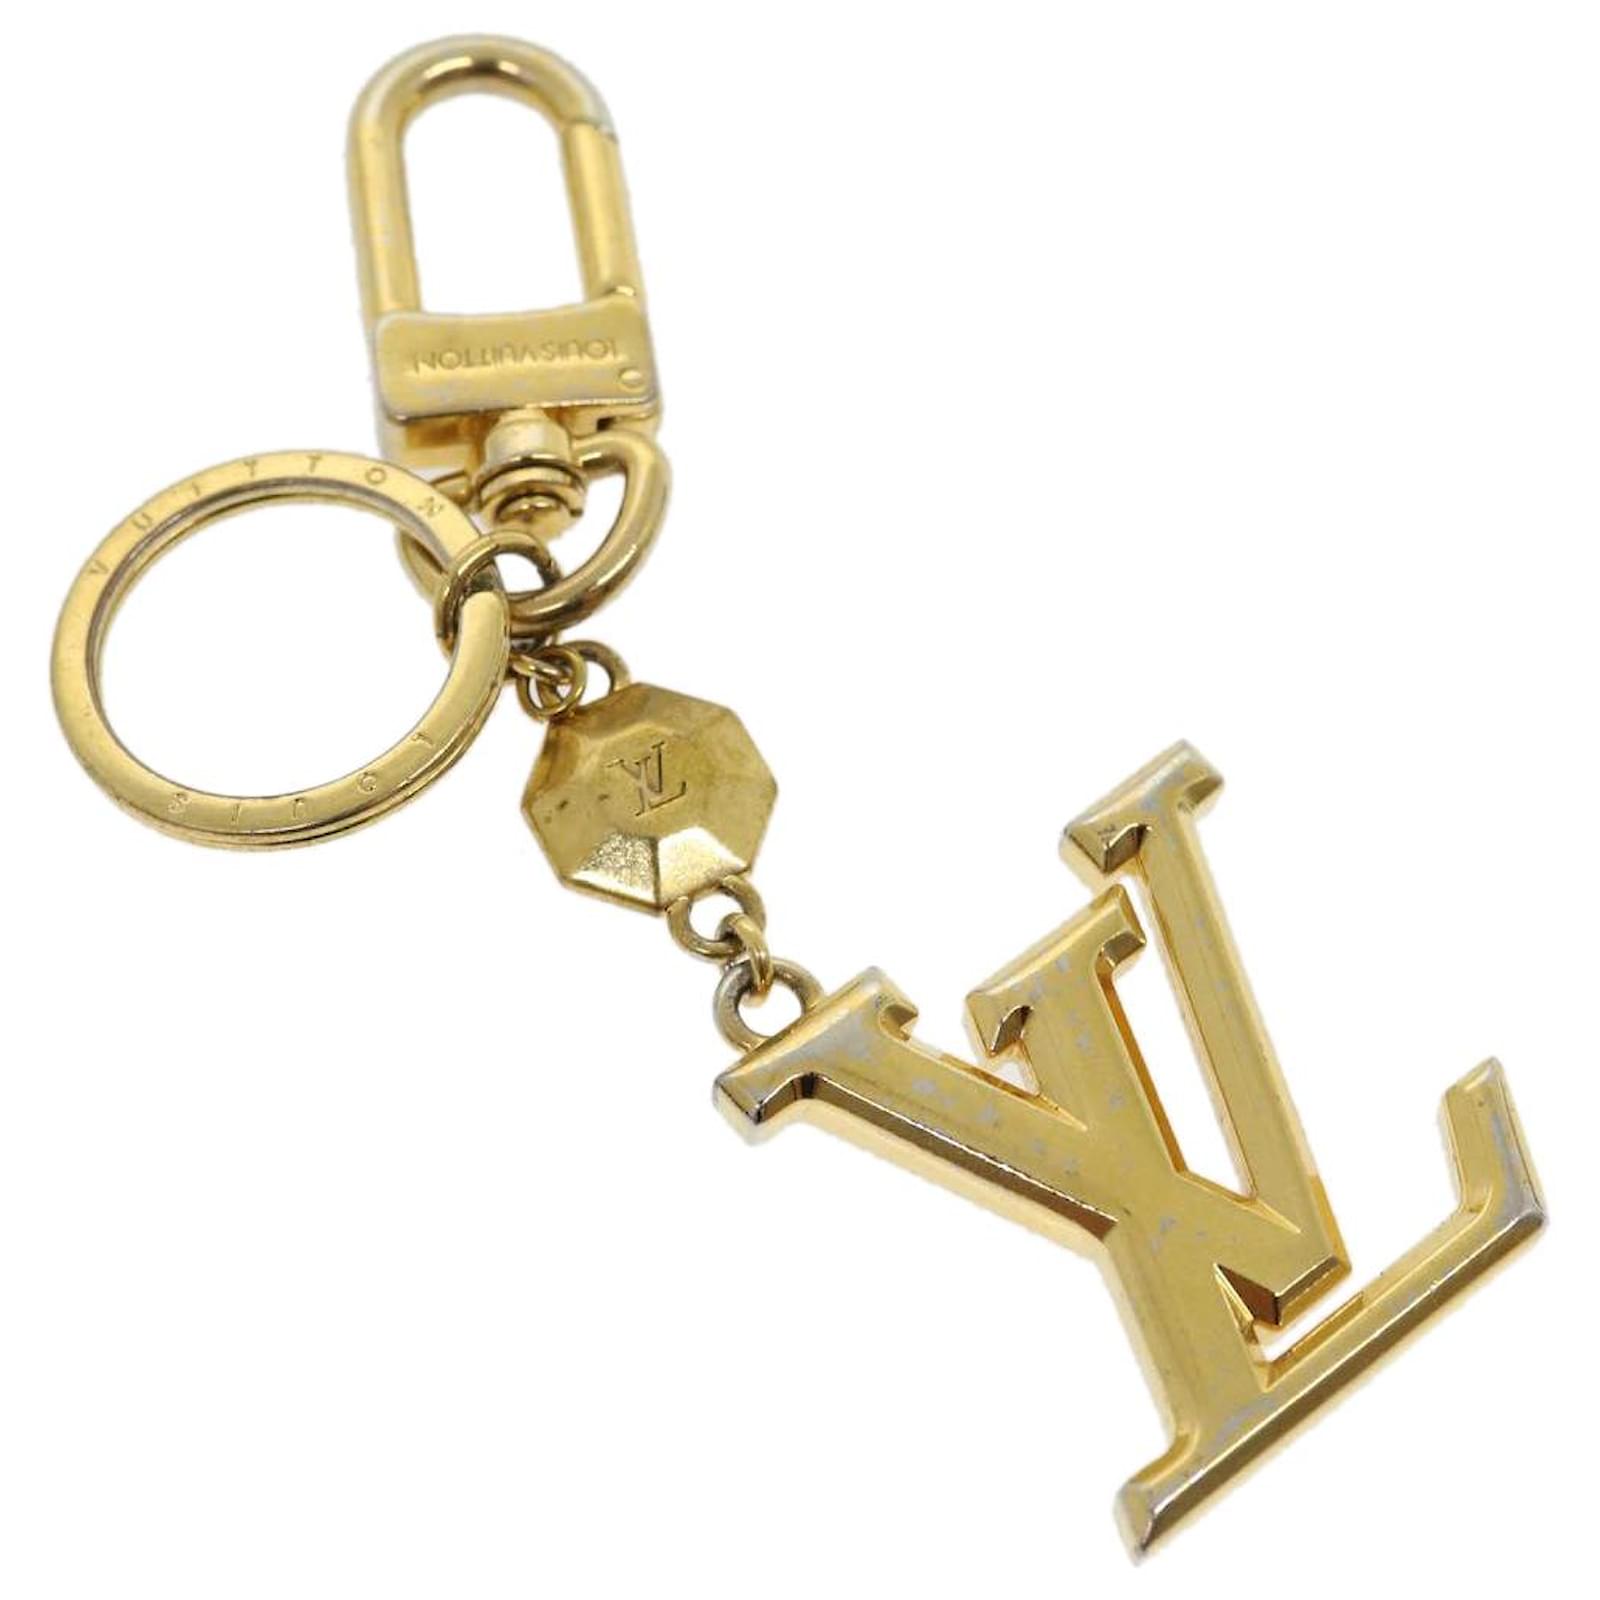 Louis Vuitton Lv Facettes Bag Charm & Key Holder (M65216)